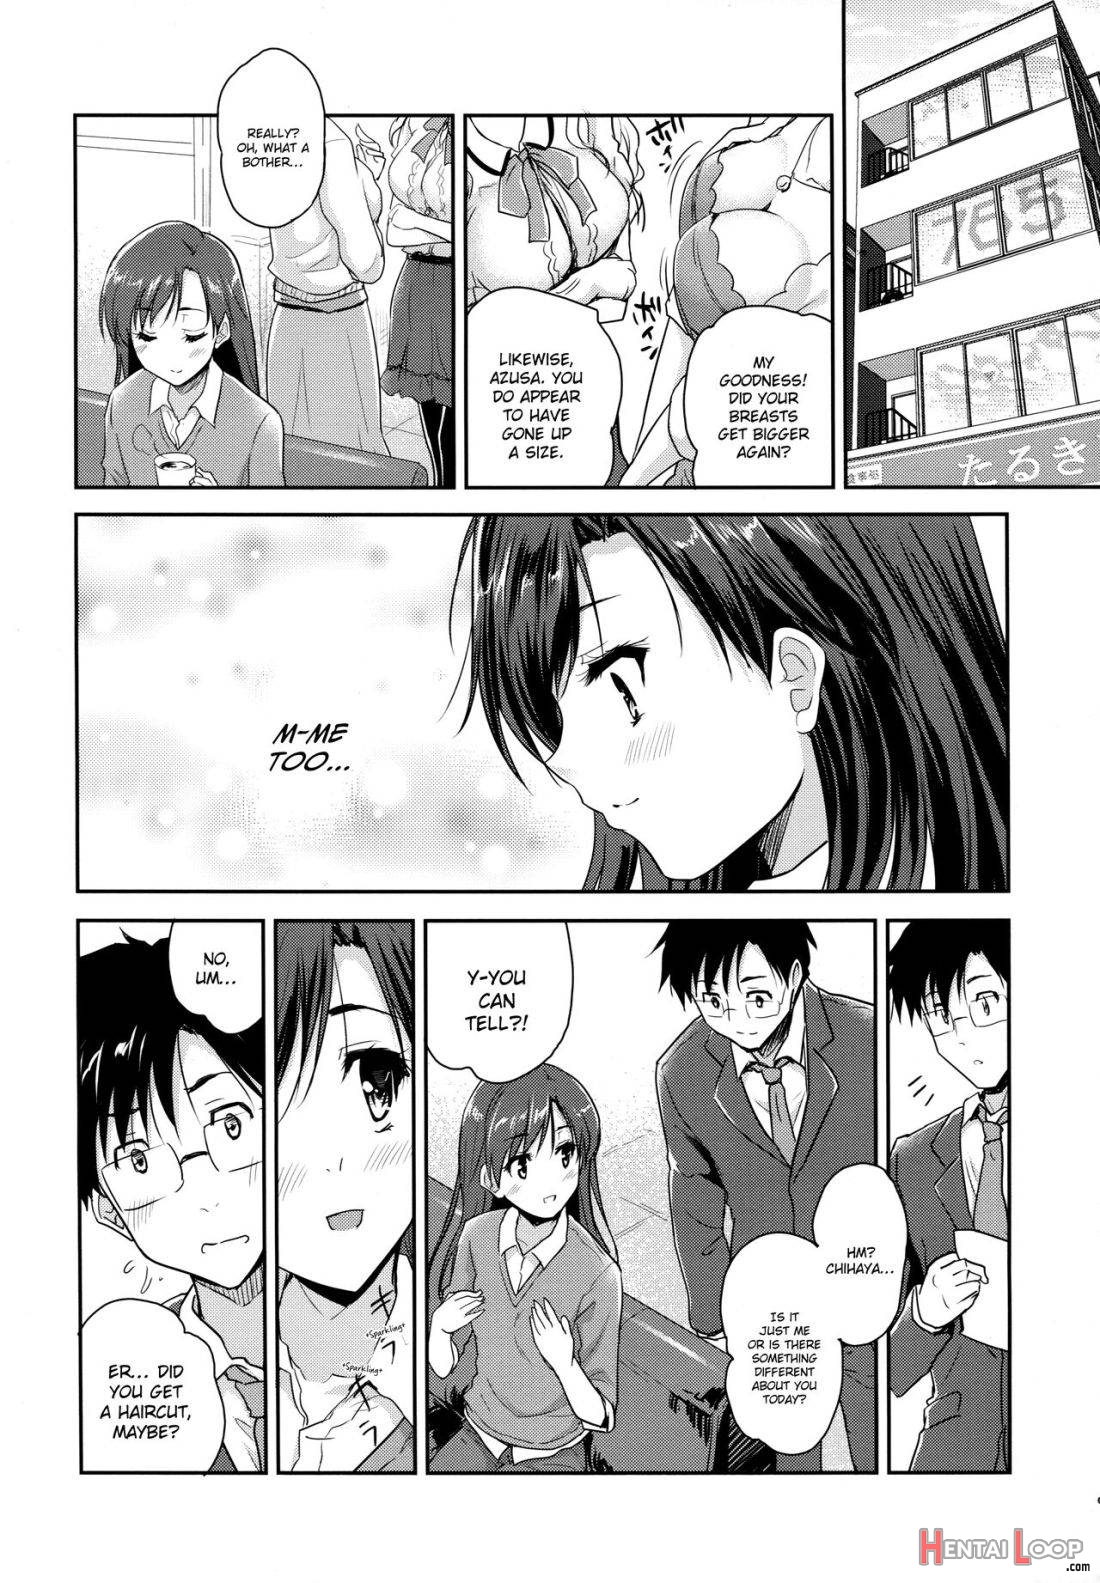 Naichichi Panic page 5